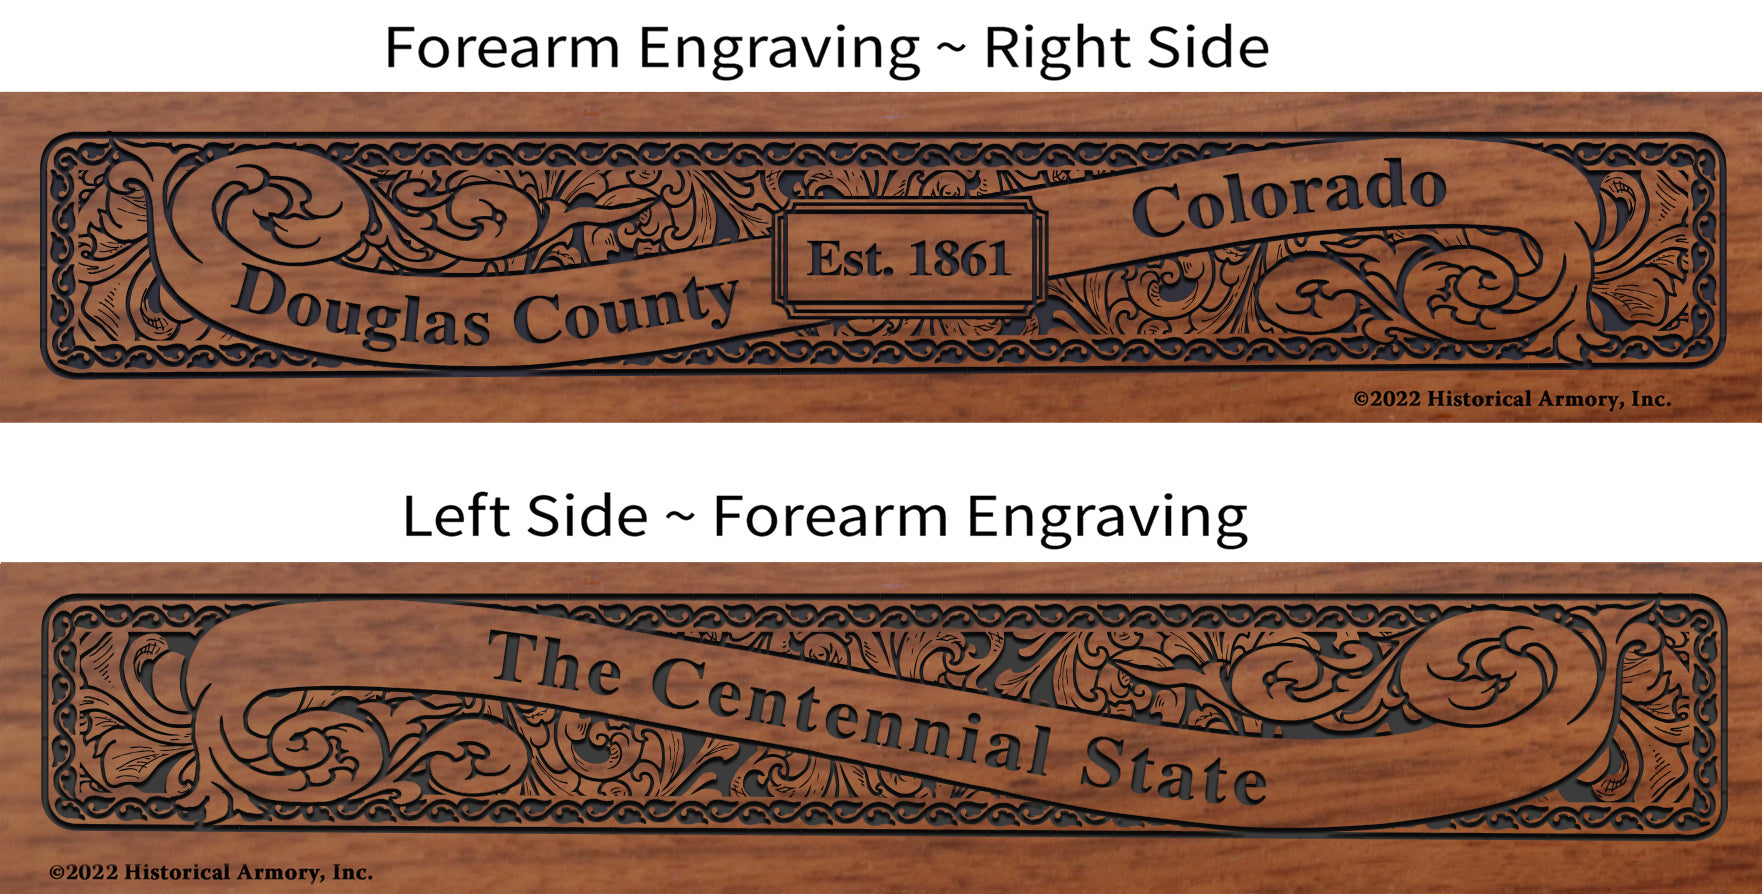 Douglas County Colorado Engraved Rifle Forearm